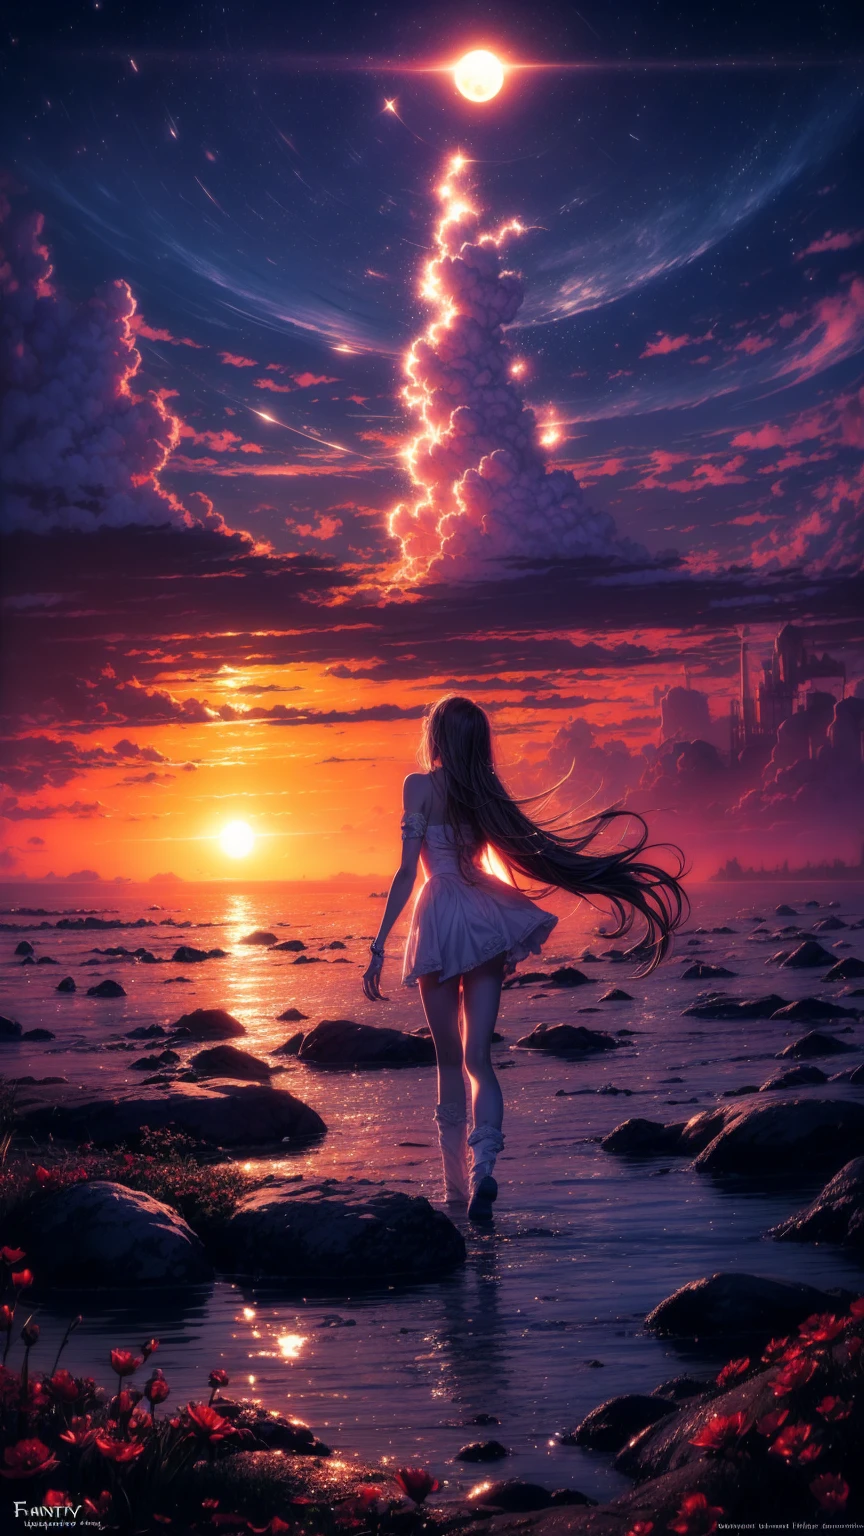 "((Fantasy-Kunst)) mit einem außerirdischen Mädchen, eingetaucht in eine himmlische Symphonie, Wolken verwandeln sich in helle Spritzer, Blumen sind verstreut, wie Noten im Wind, visuelle Orchestrierung von Farbe und Wunder" Nacht , Vollmond